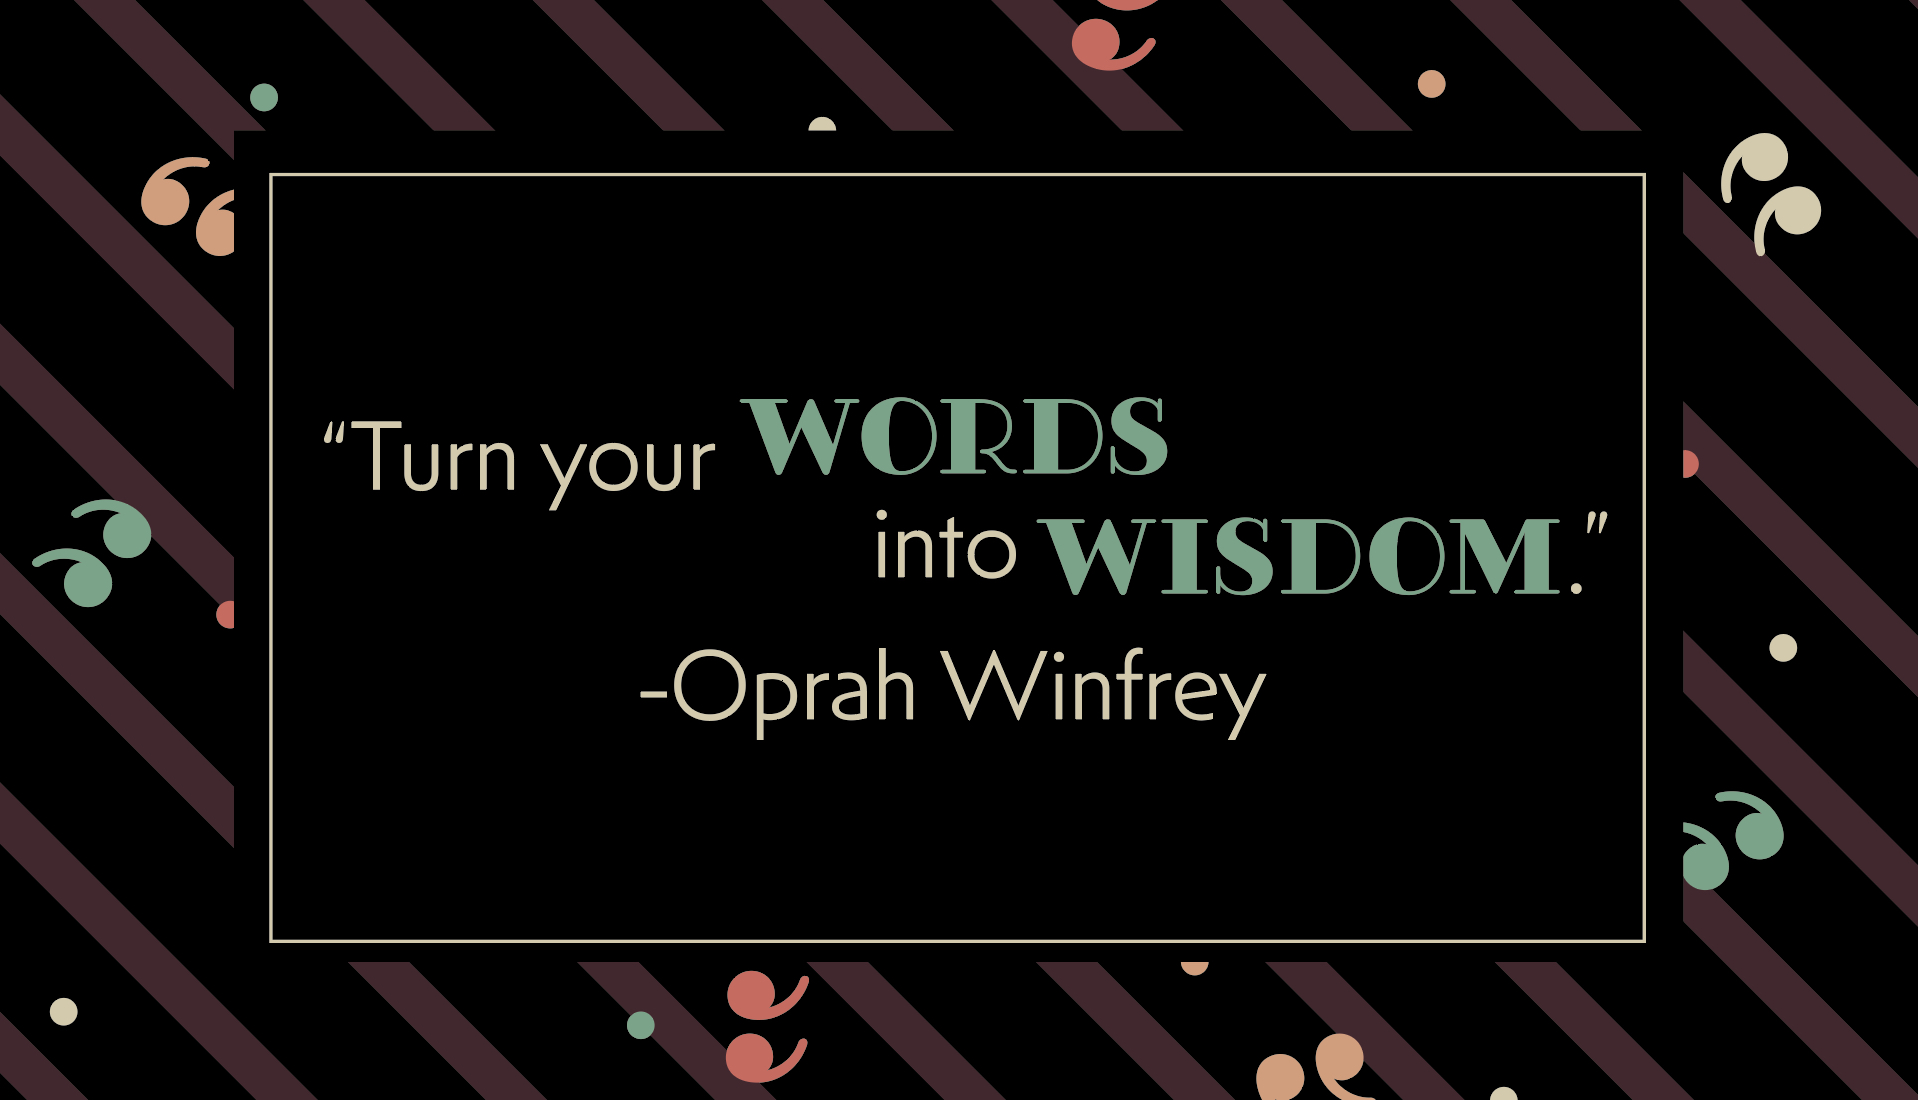 “Turn your wounds into wisdom.” Oprah Winfrey